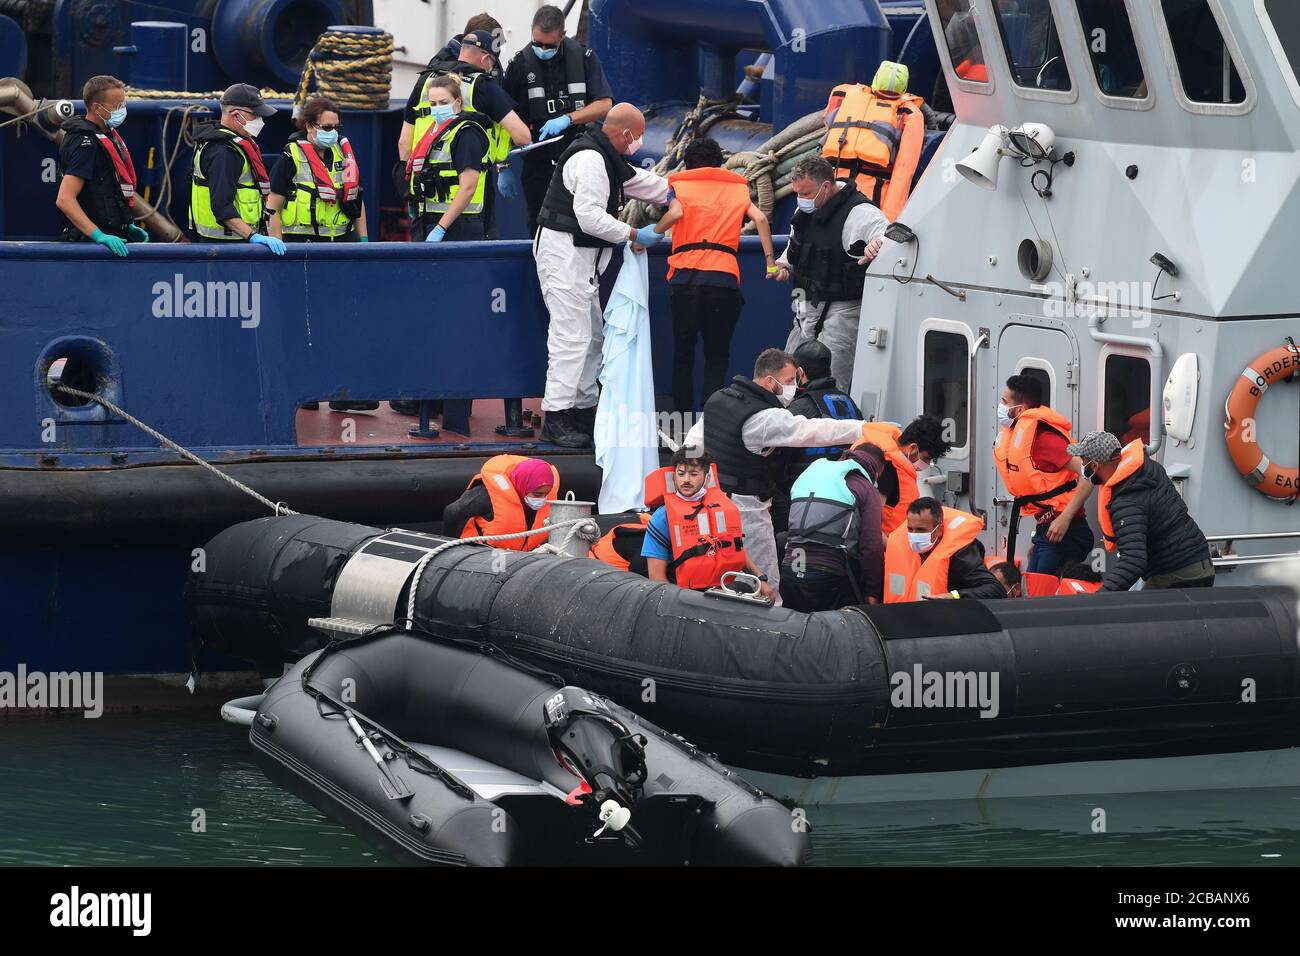 Un grupo de personas que se cree que son migrantes, desembarcan cuando son traídas a Dover, Kent, por oficiales de la Fuerza Fronteriza, después de un número de pequeños incidentes de barcos en el Canal de la Mancha a principios de hoy. Foto de stock